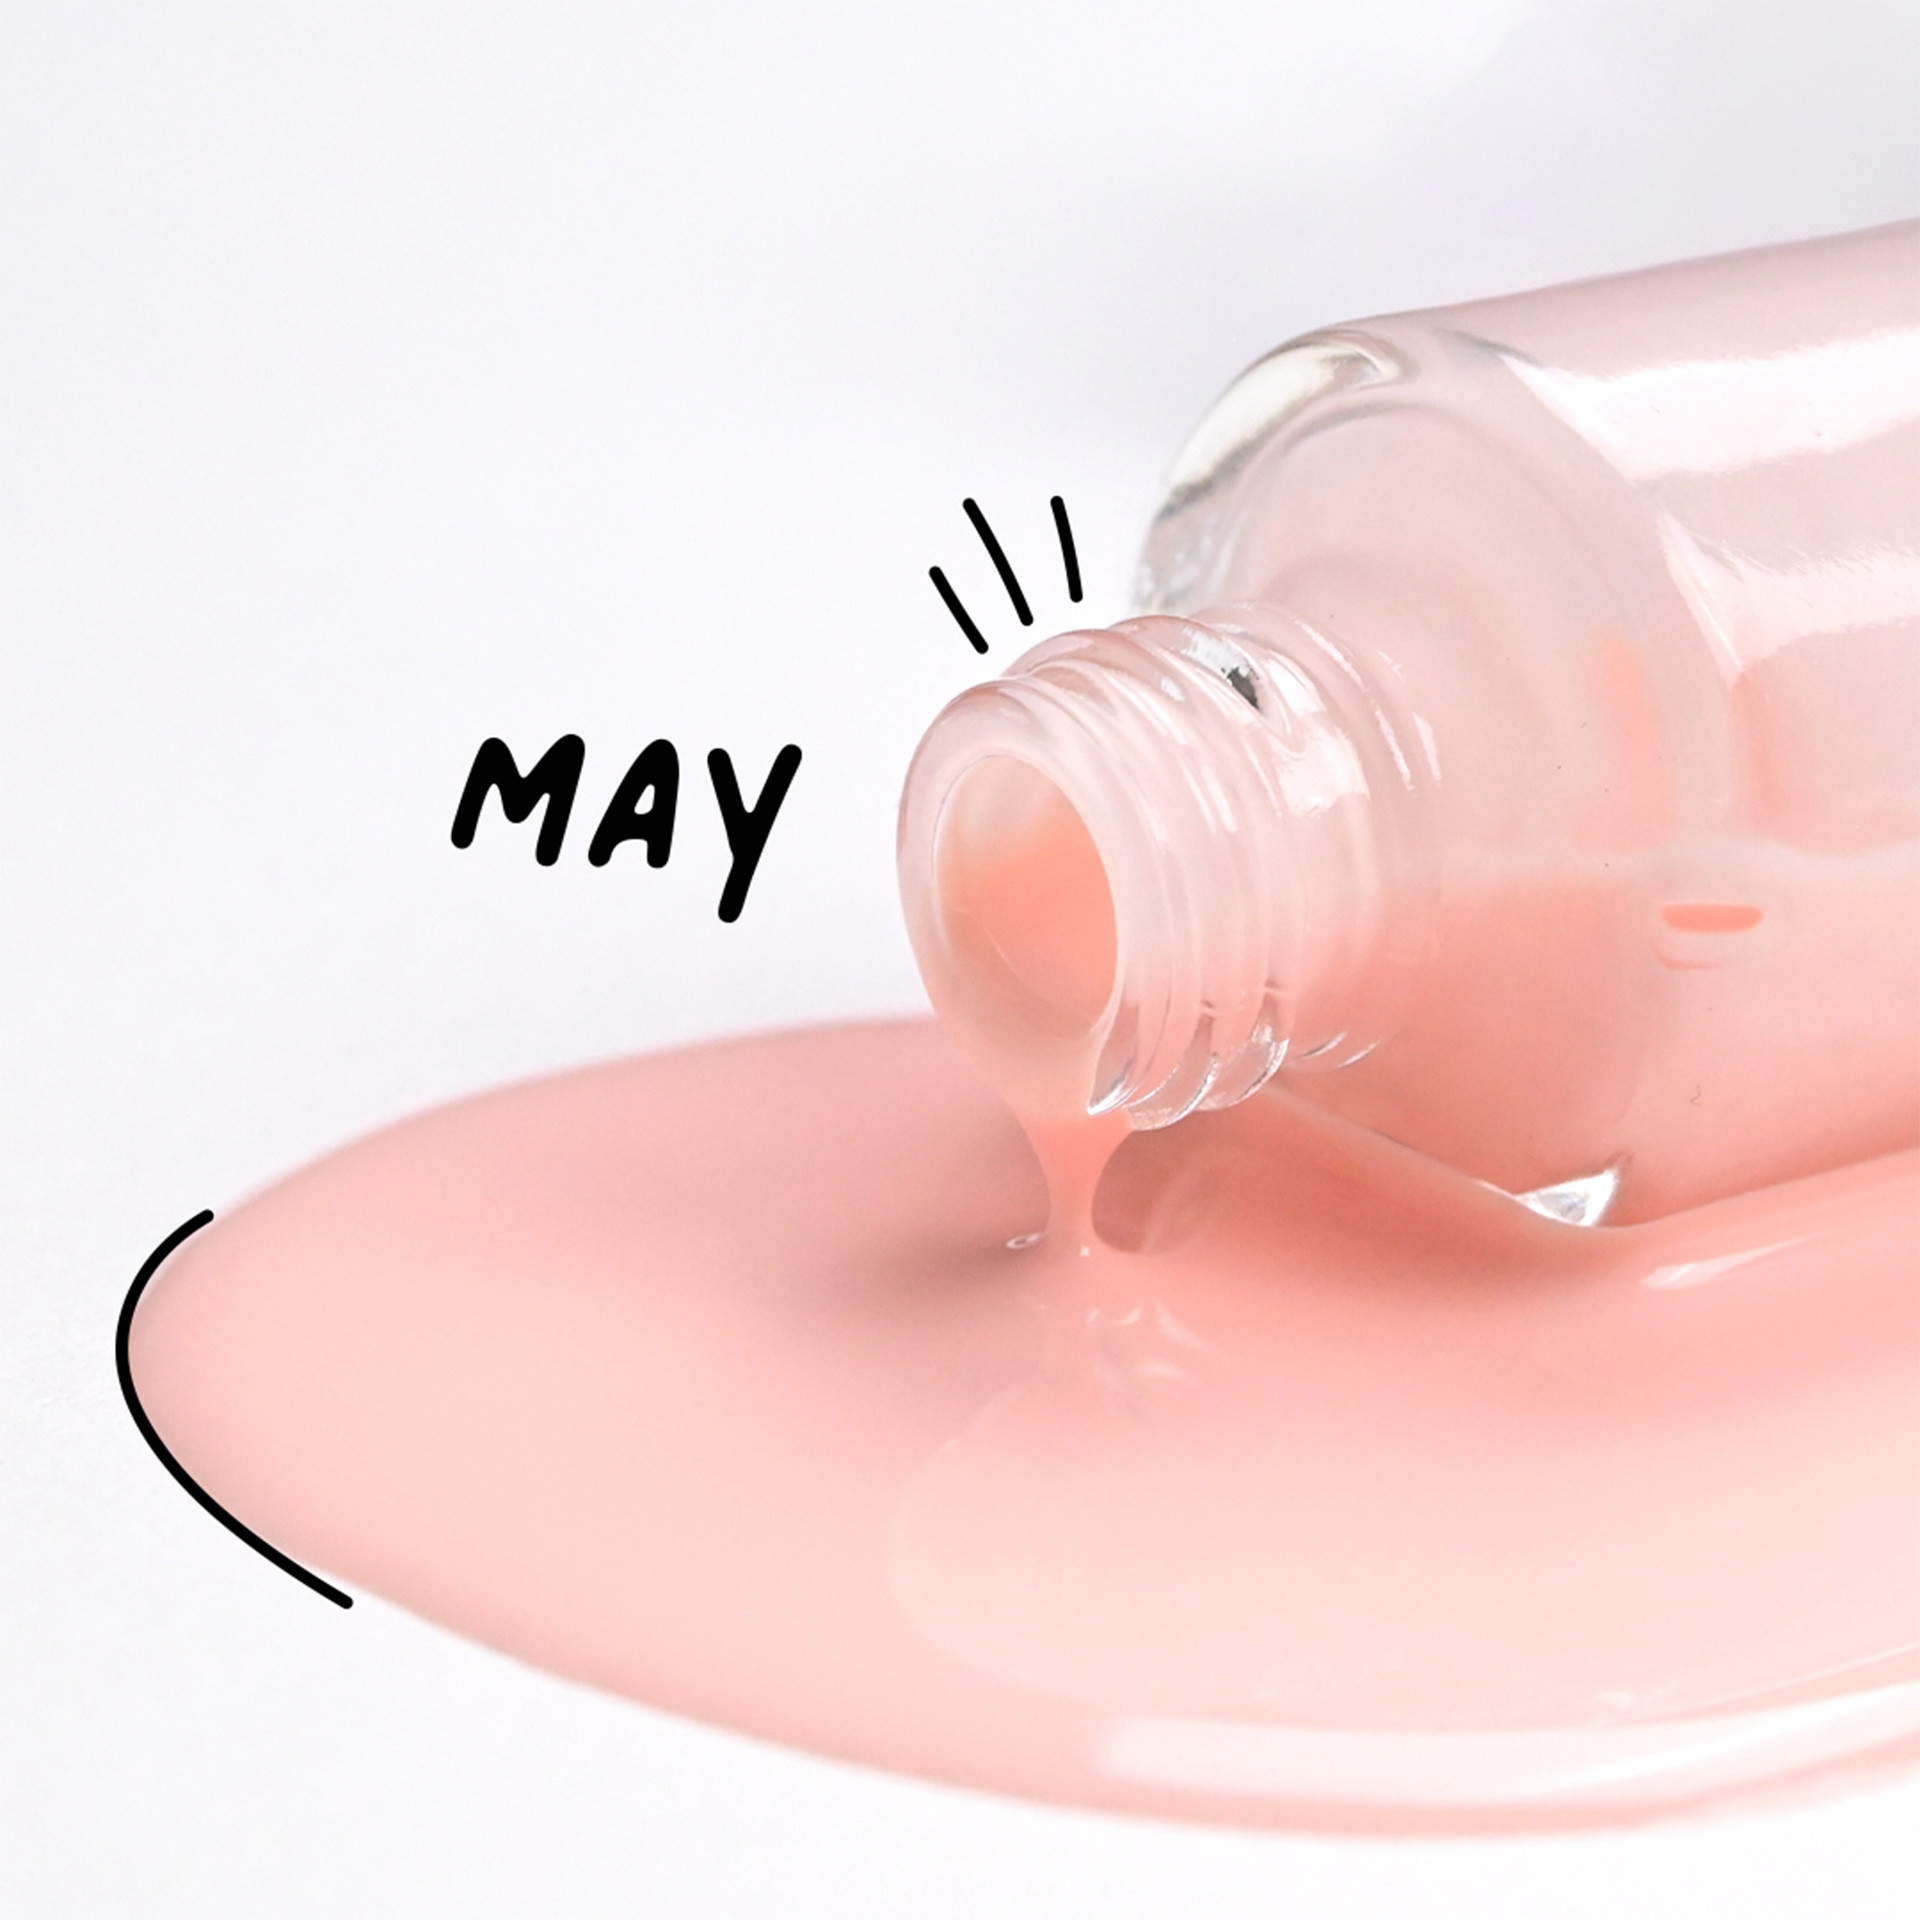 May - powdery pink